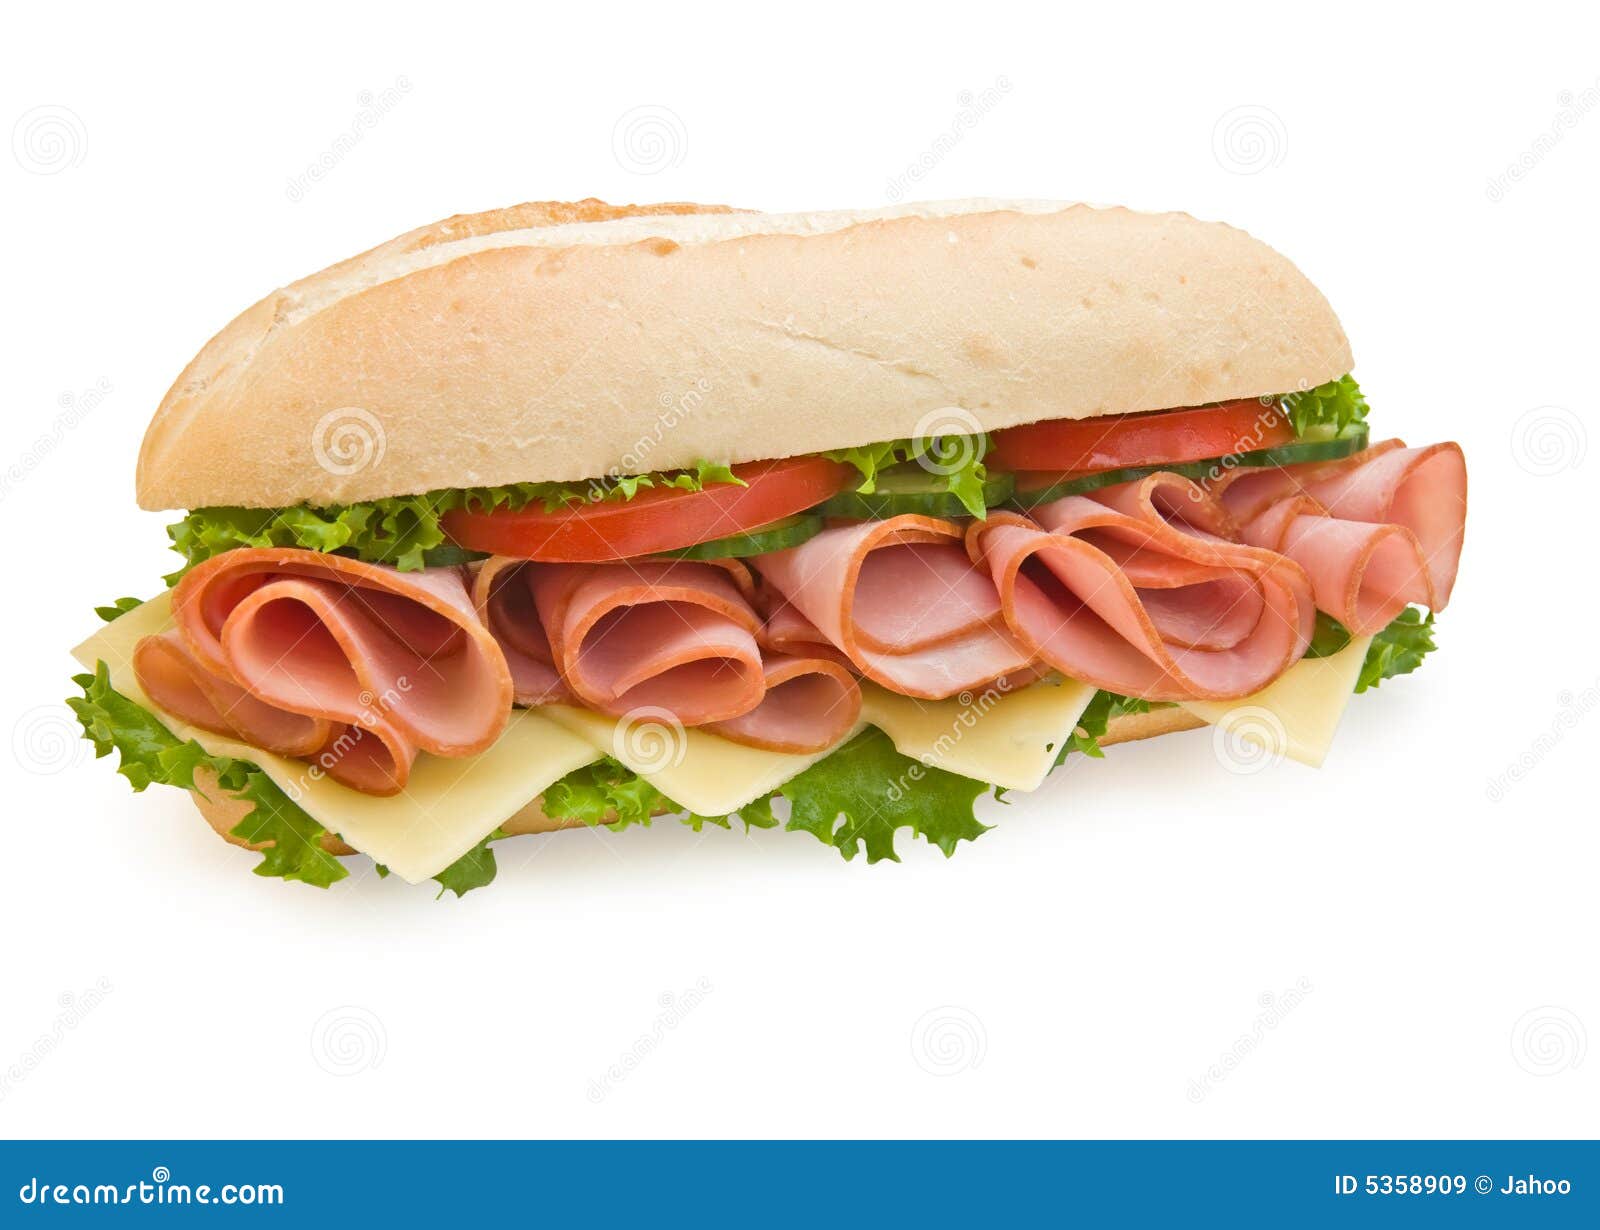 ham & swiss sub sandwich on white background